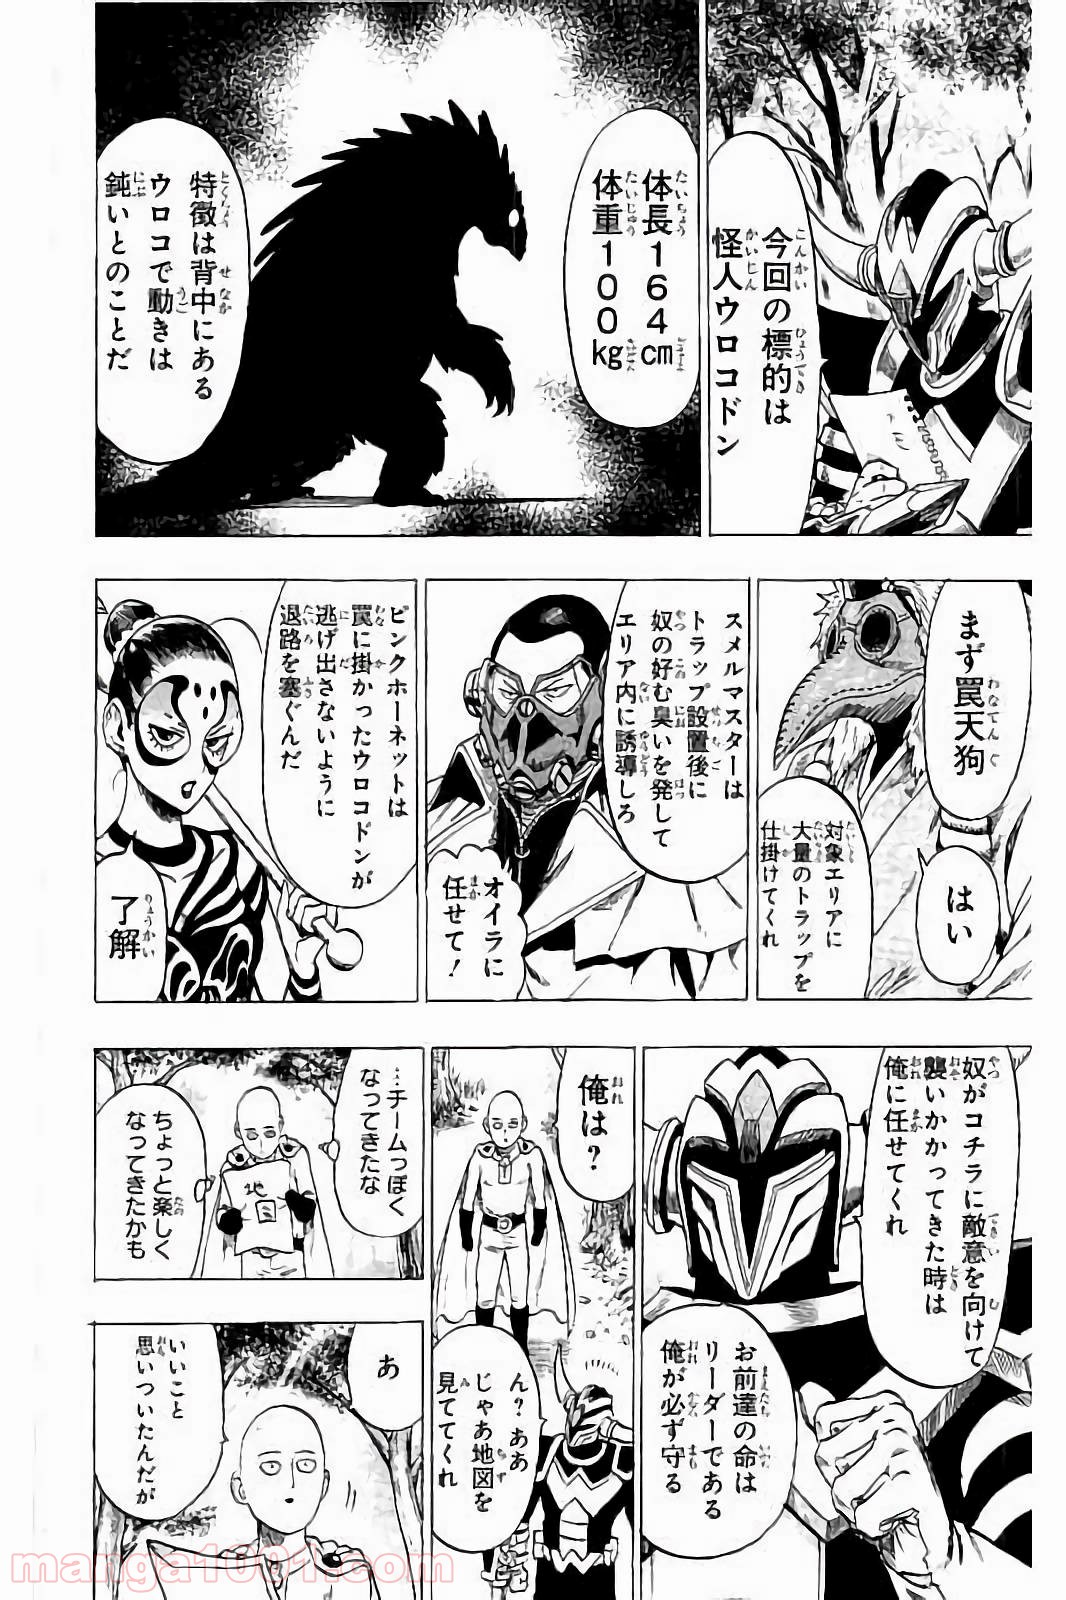 ワンパンマン One Punch Man Raw 第61 5話 Manga Raw